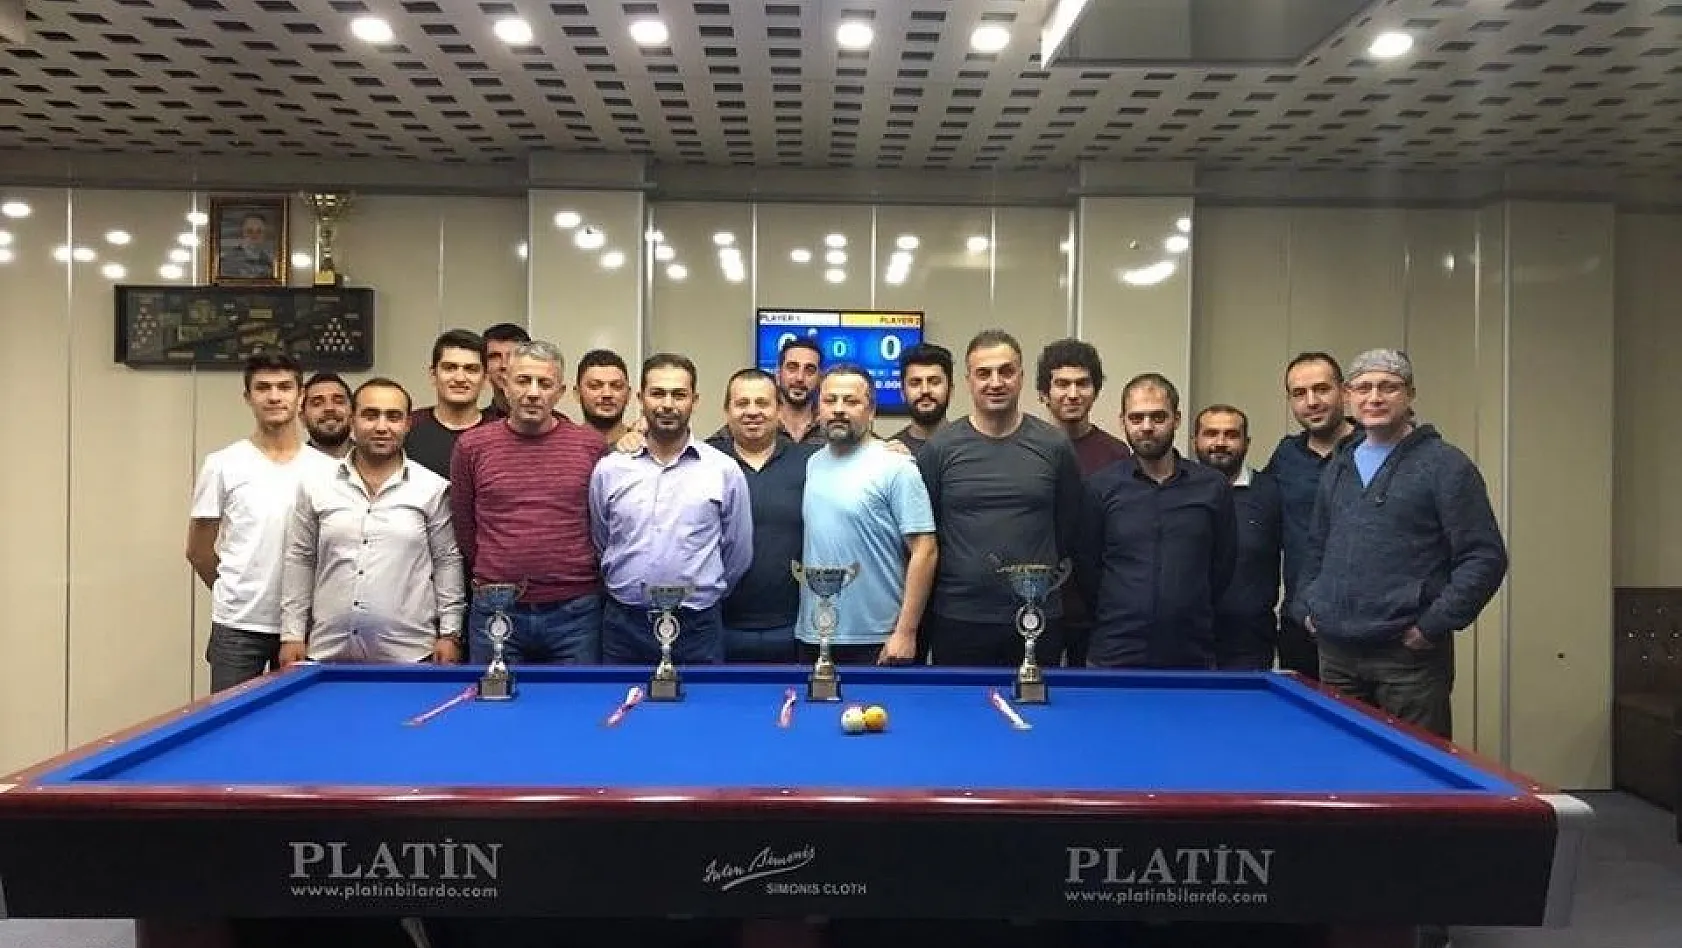 29 Ekim Cumhuriyet Kupası 3 Bant Bilardo Turnuvası tamamlandı
